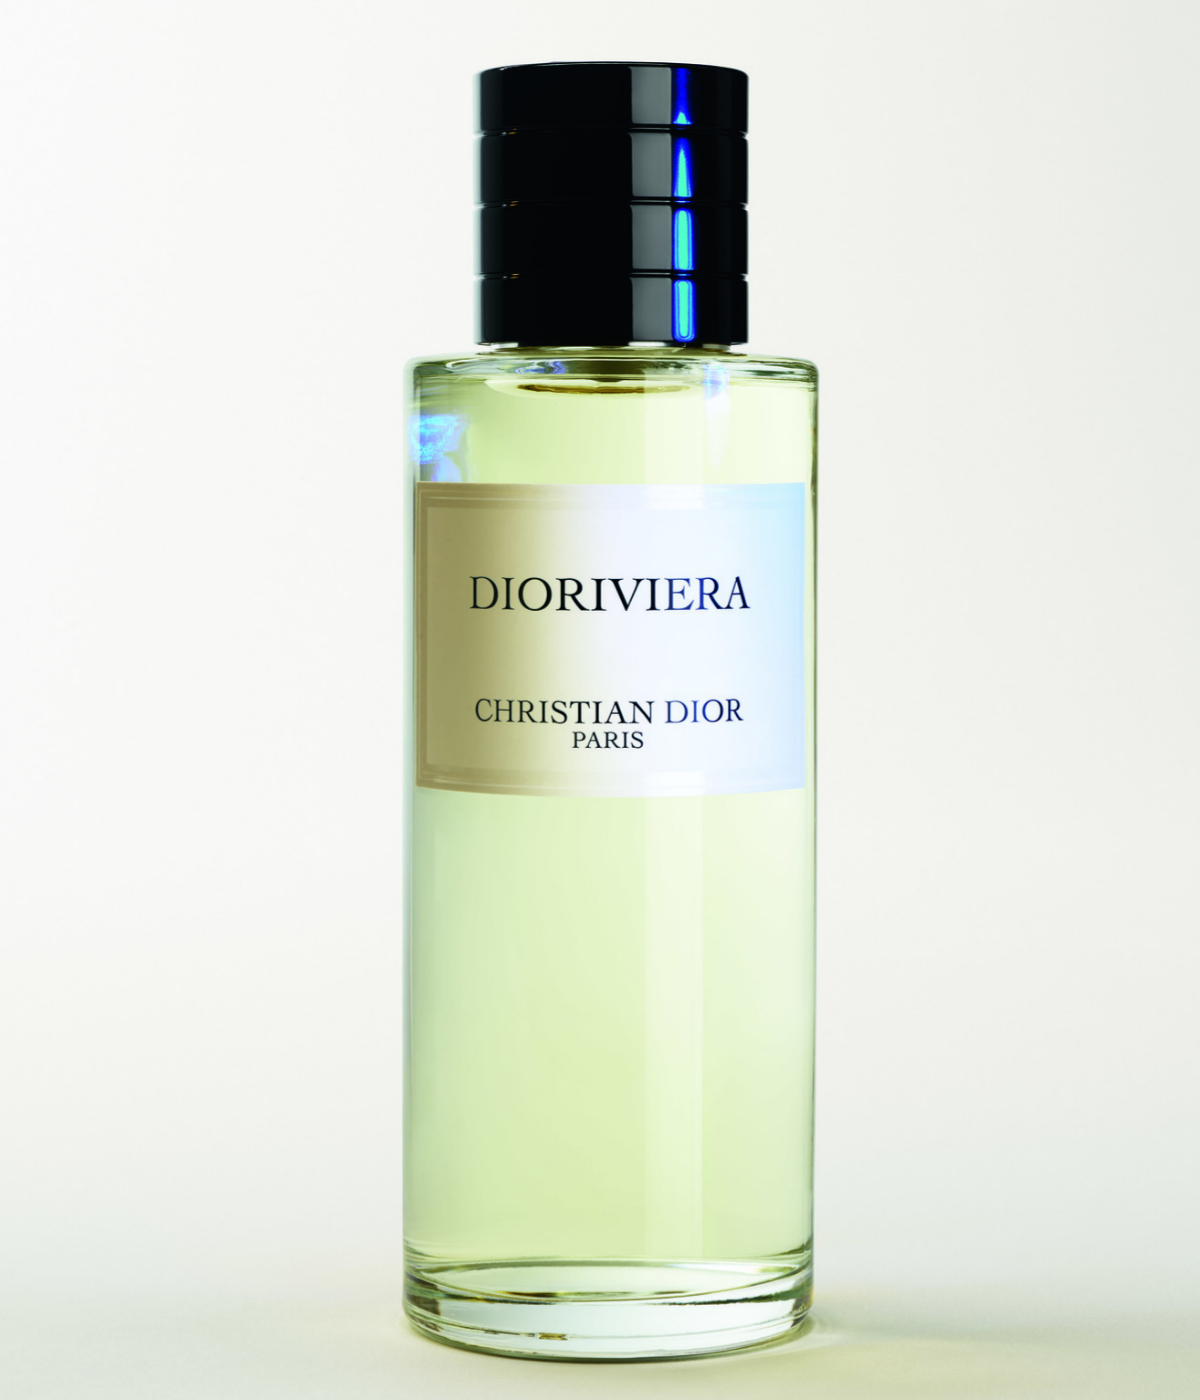 Perfume Dioriviera de Christian Dior.